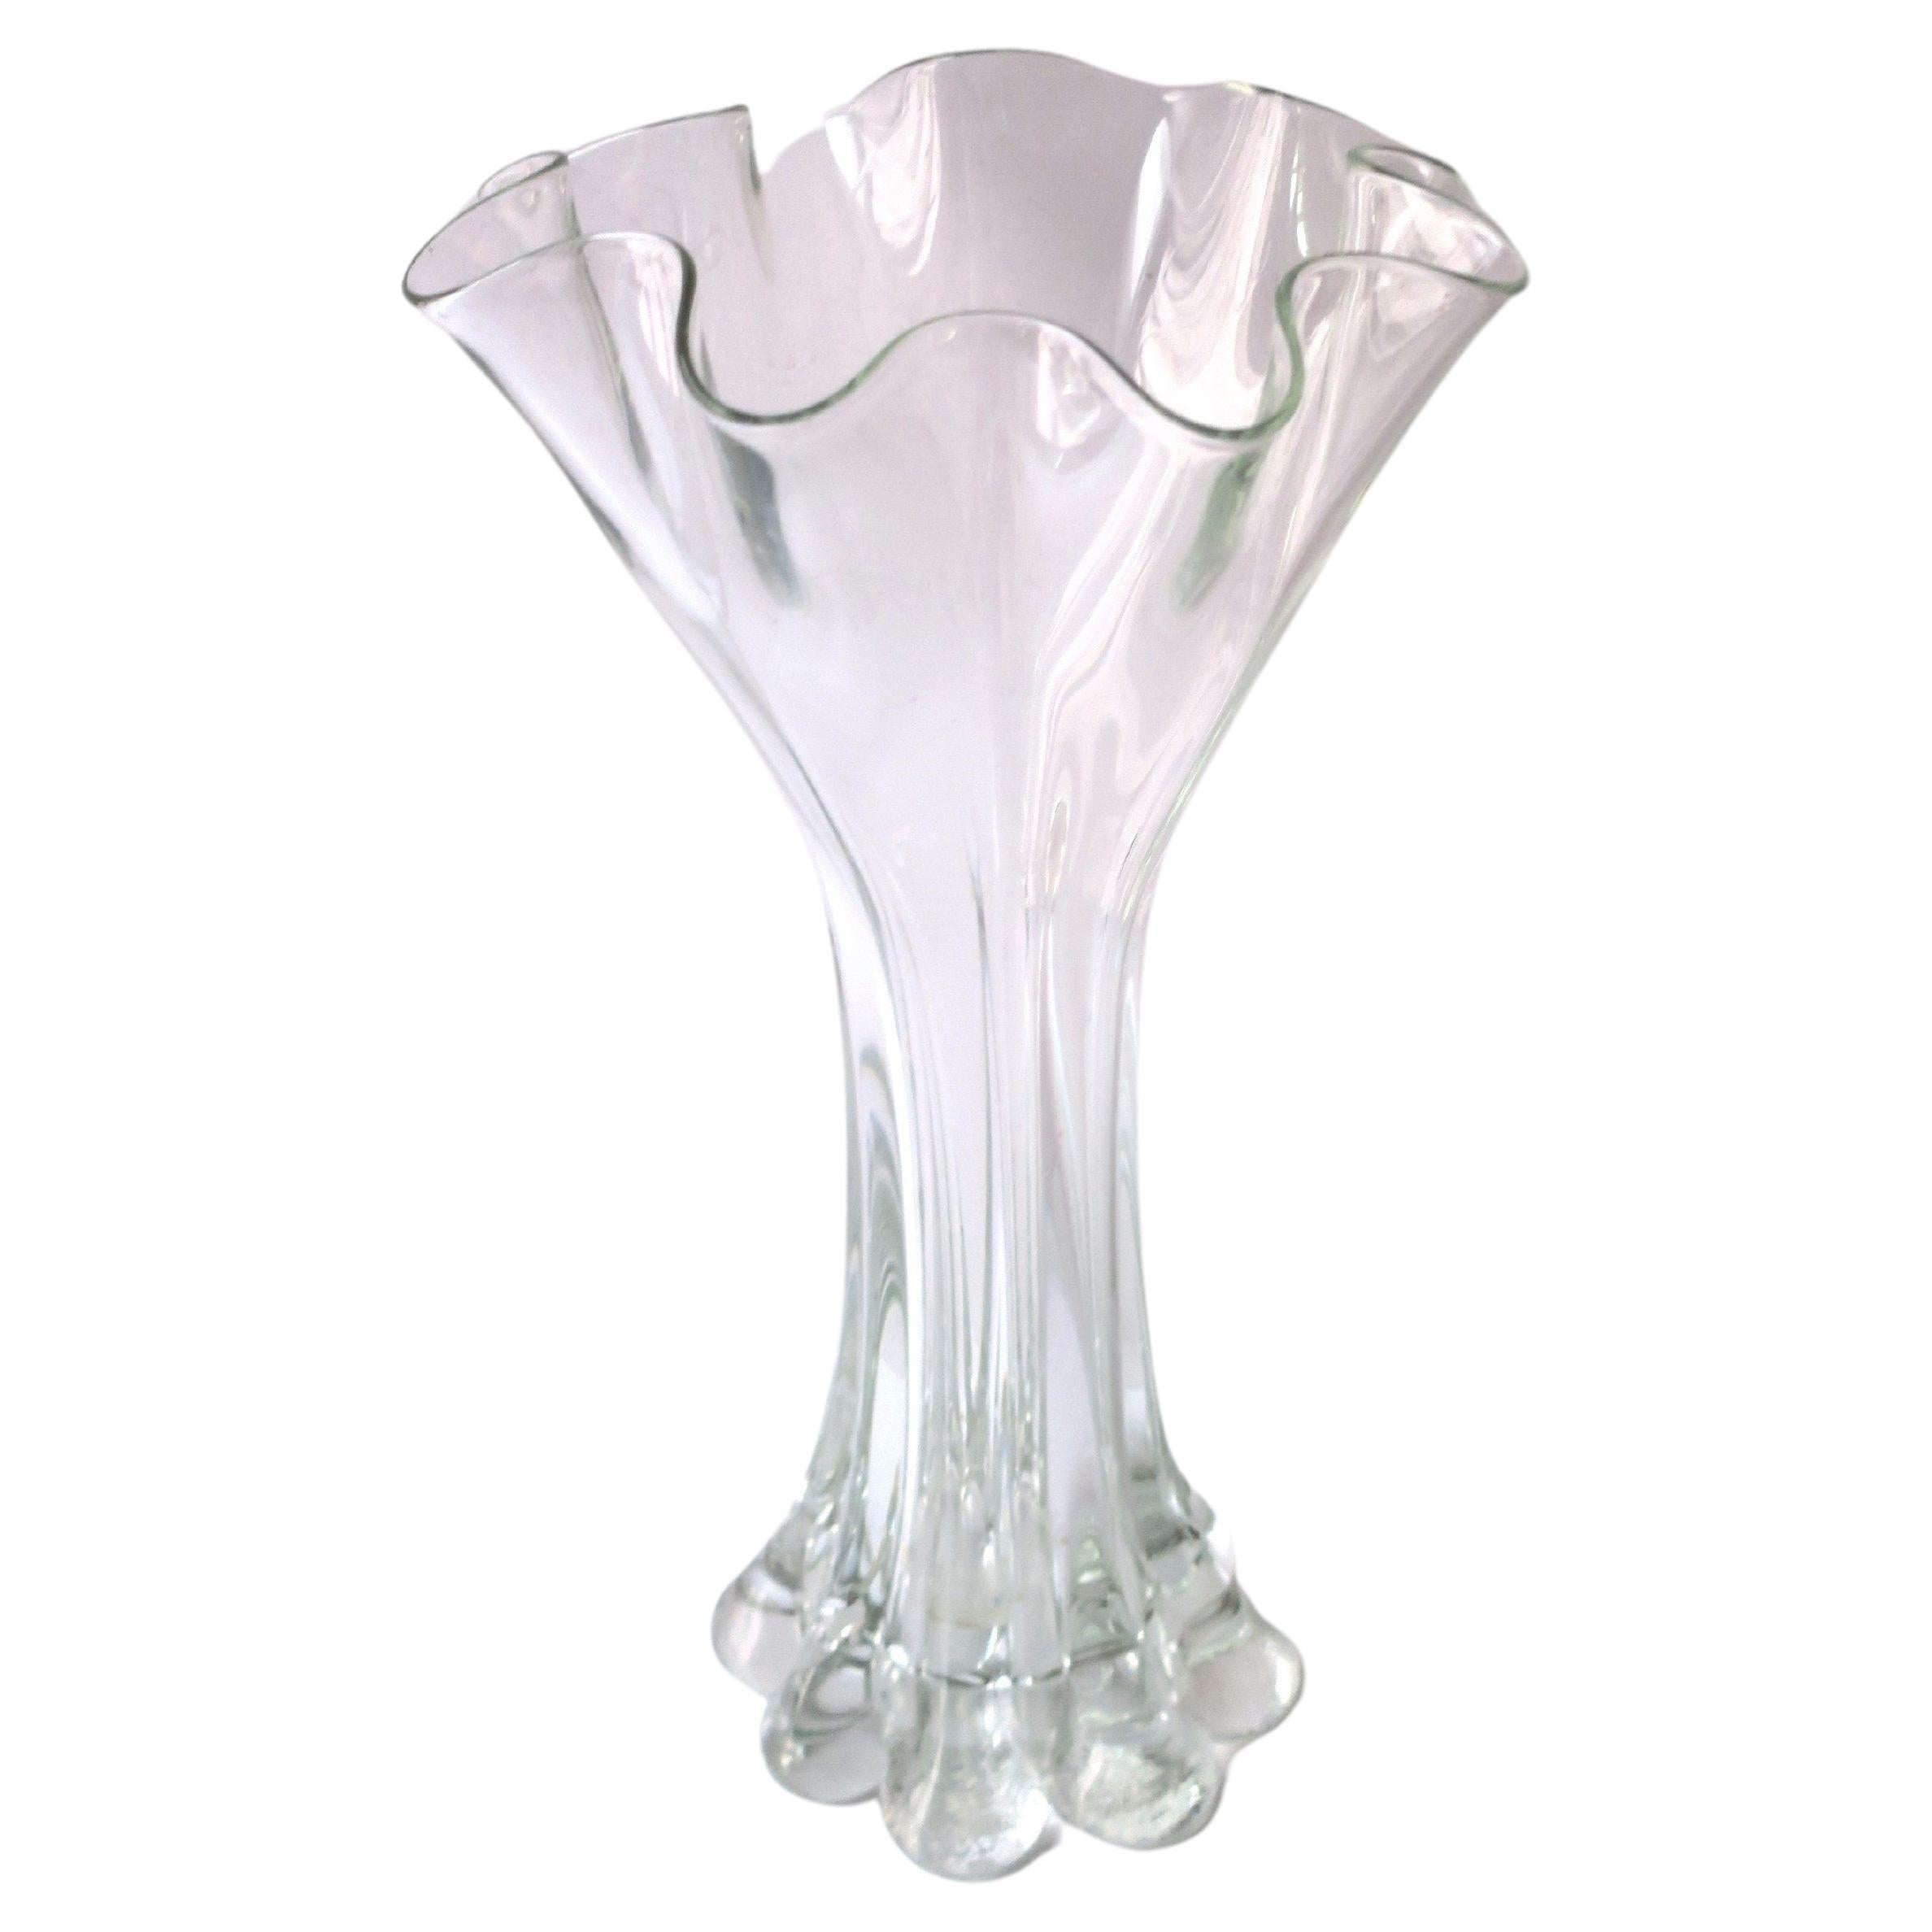 Organic Modern Art Glass Vase For Sale